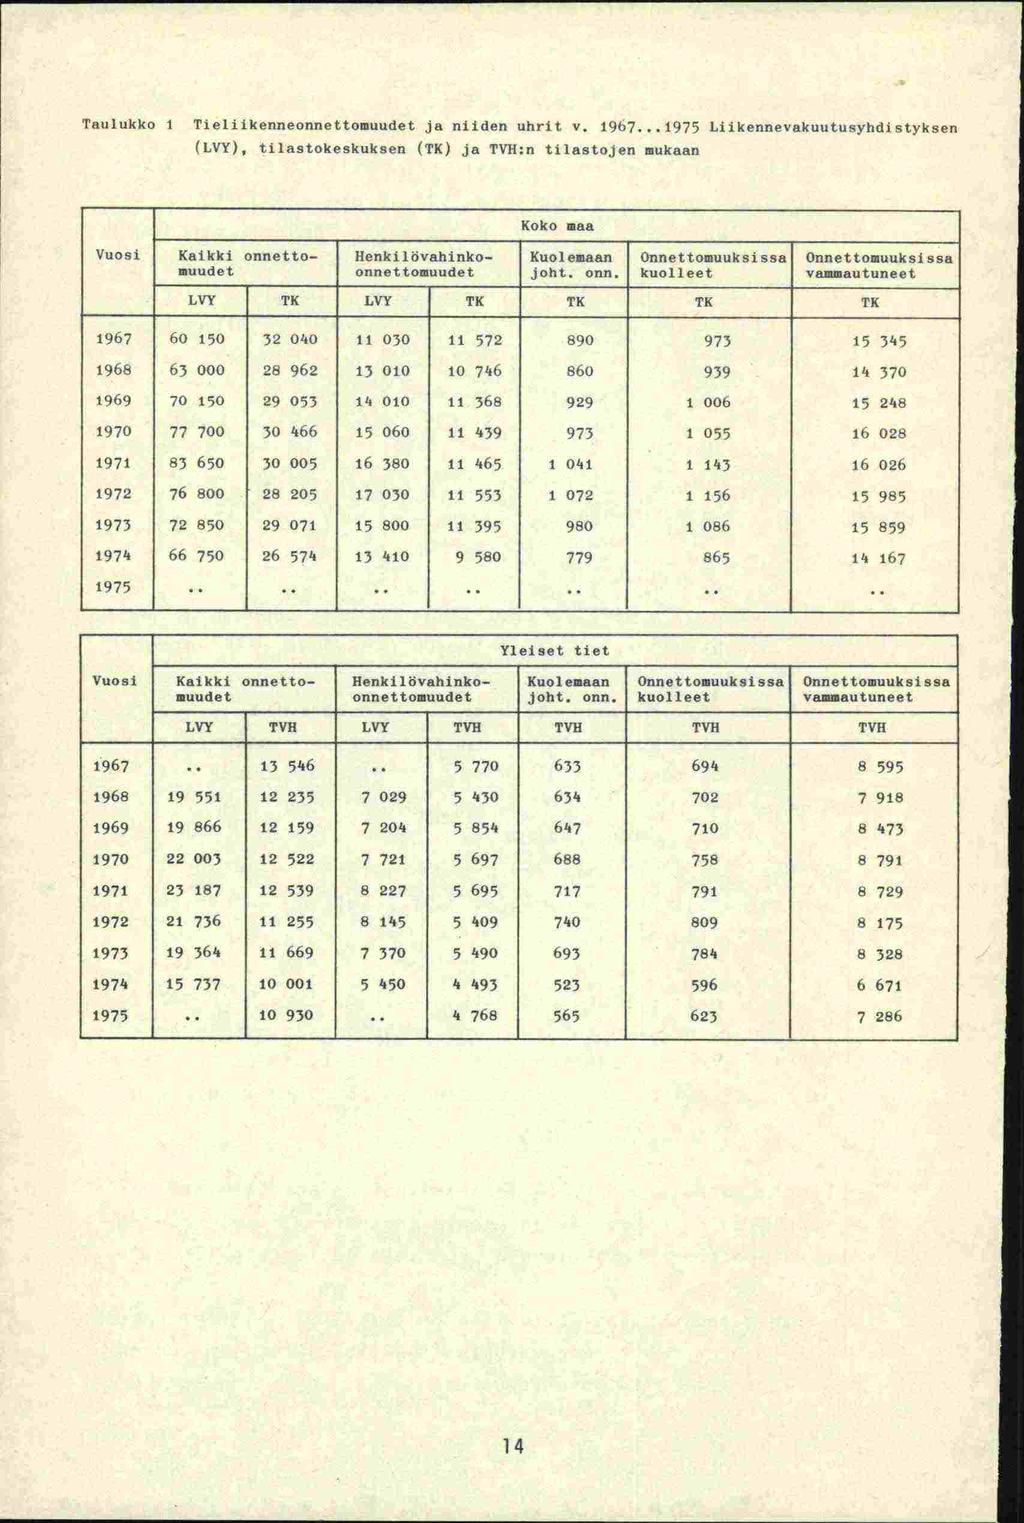 Taulukko 1 Tieliikenneonnettomuudet ja niiden uhrit v. 1967.